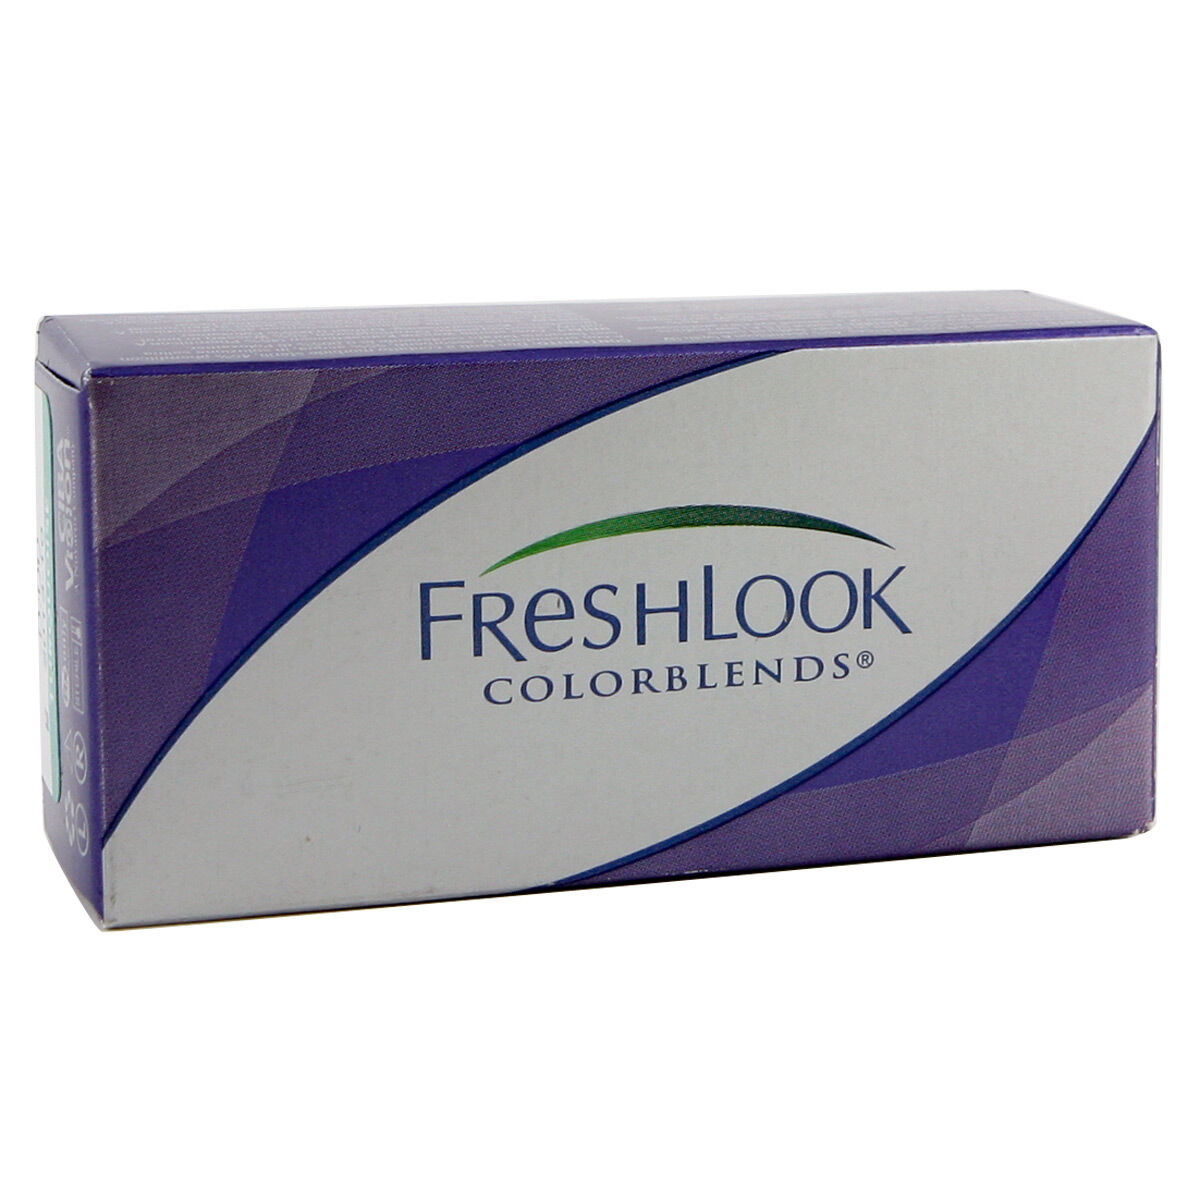 Alcon Freshlook Colorblends (2 Contact Lenses), Green, Ciba Vision/Alcon, Monthly Coloured Lenses, Phemfilcon A